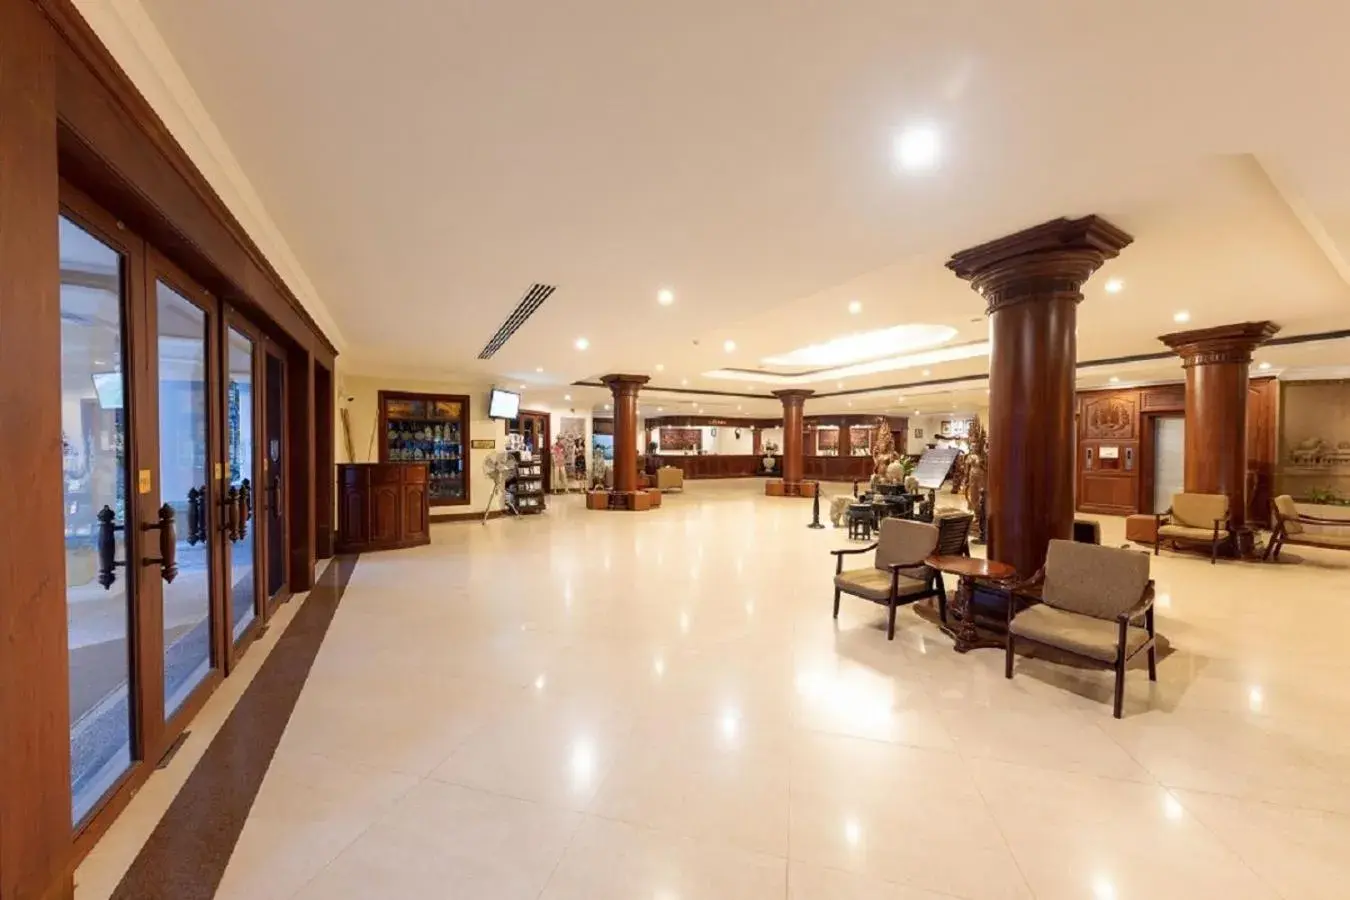 Lobby or reception, Lobby/Reception in Khemara Angkor Hotel & Spa